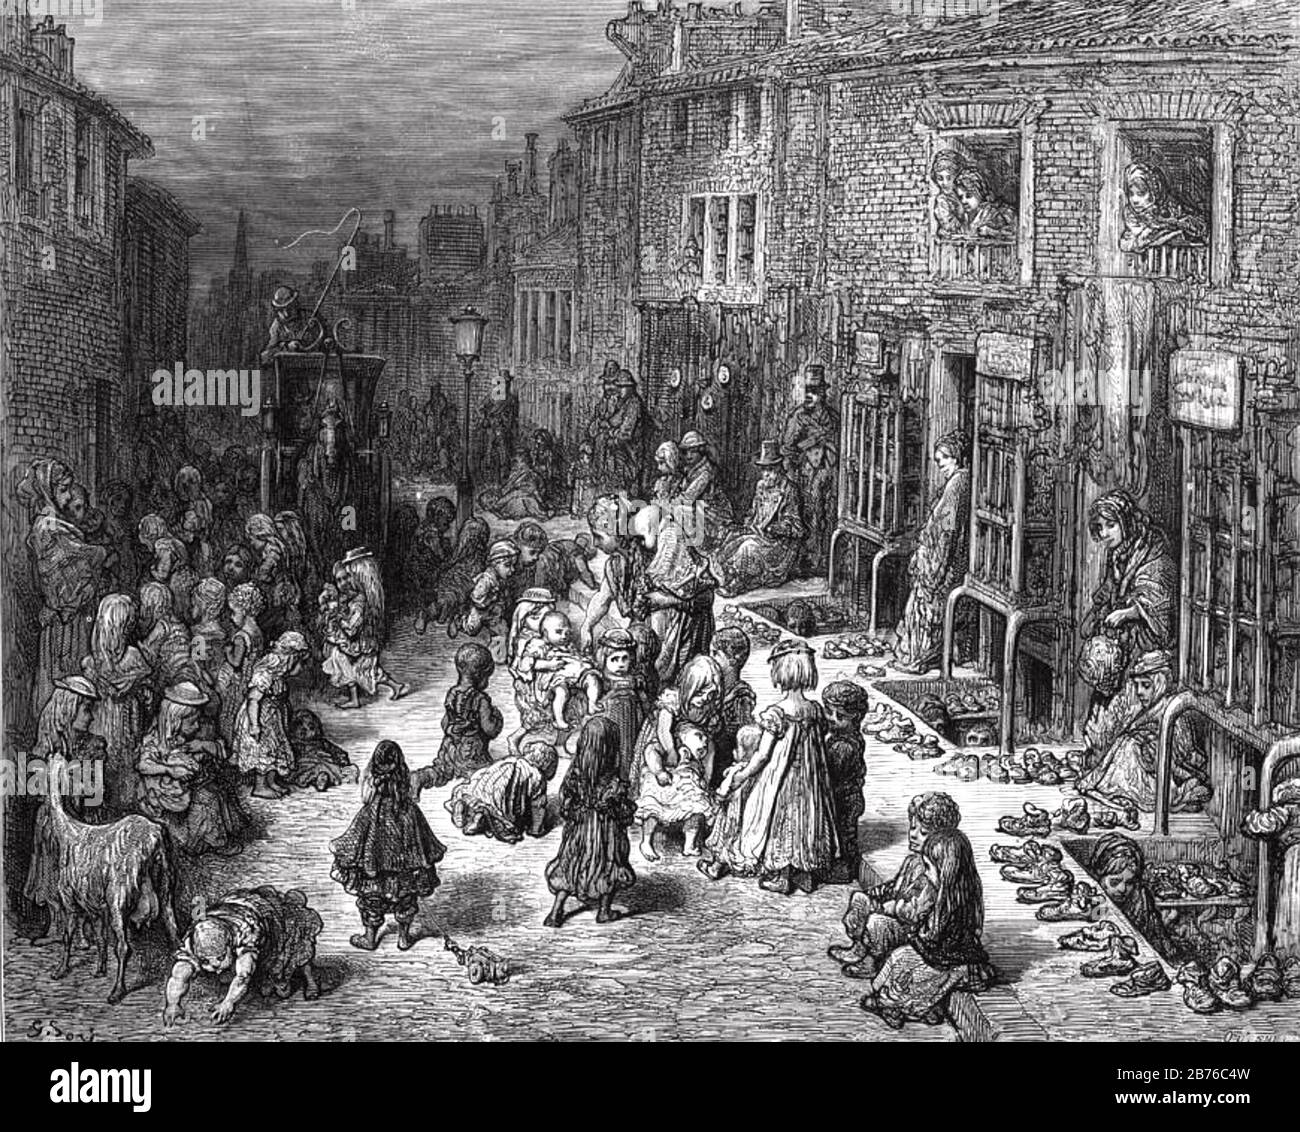 BARRIOS DE TUGURIOS DE LONDRES Dudley Street, Seven Dials, alrededor de 1840. La pobreza aquí fue notada por Charles Dickens, John Keats y W.S. Iolanthe de Gilbert Foto de stock